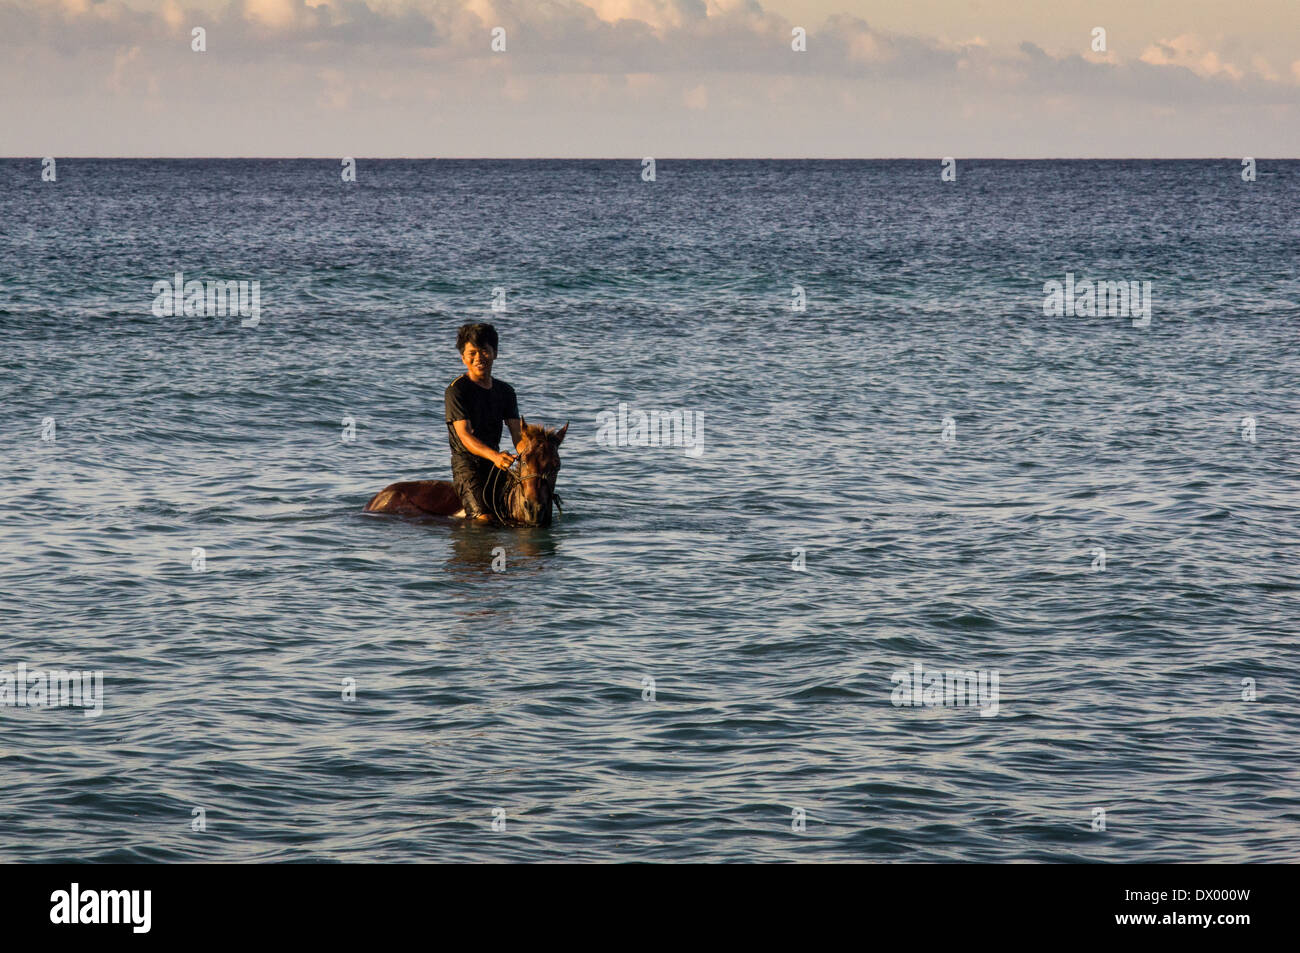 local man with horse swimming in the sea, Gili Trawangan, Gili islands, Indonesia, Asia Stock Photo